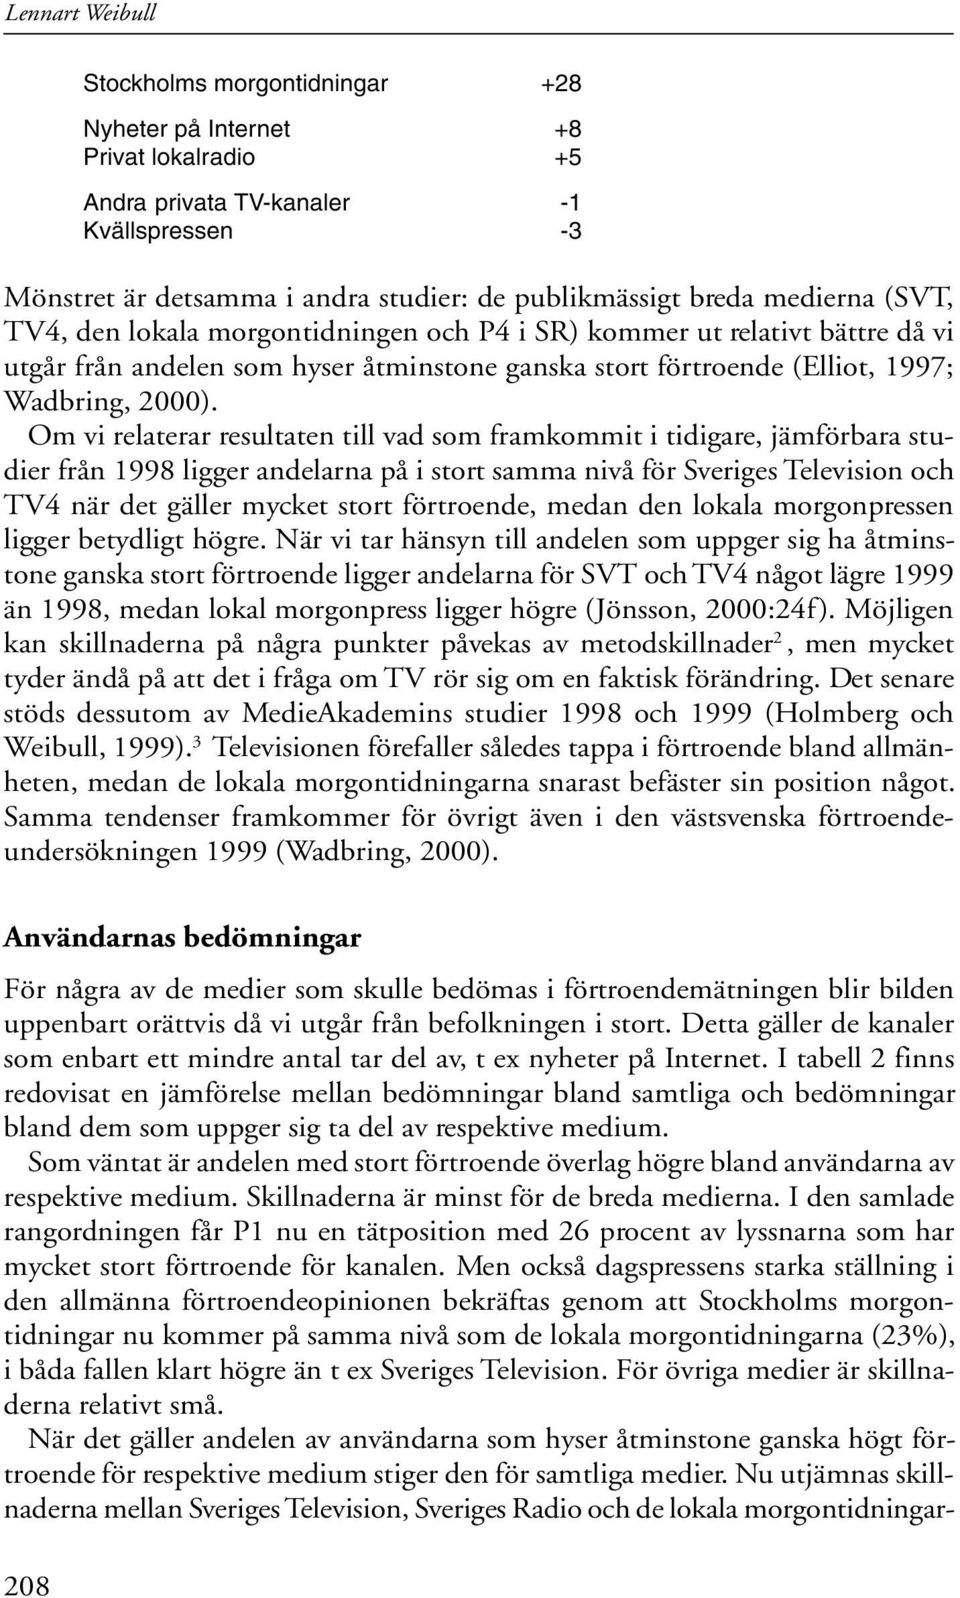 Om vi relaterar resultaten till vad som framkommit i tidigare, jämförbara studier från 1998 ligger andelarna på i stort samma nivå för Sveriges Television och TV4 när det gäller mycket stort